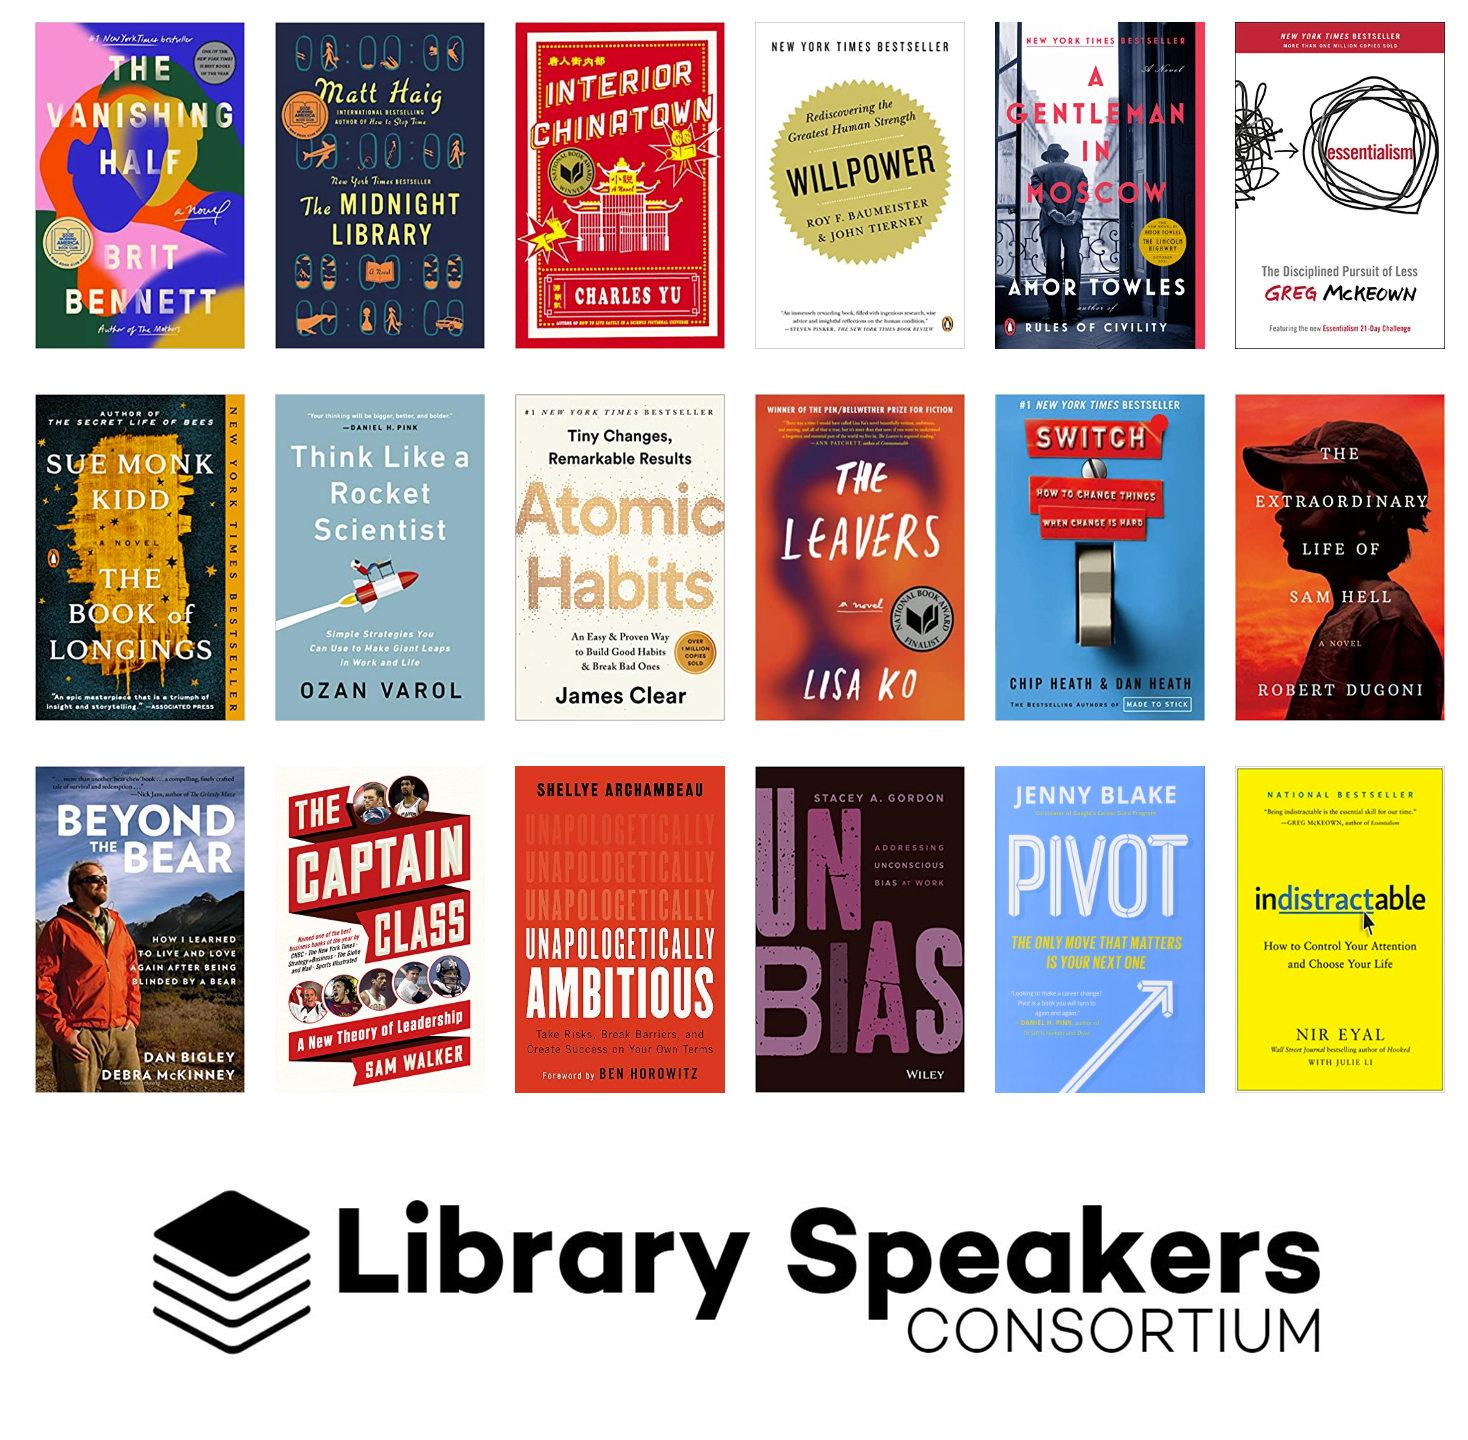 Library Speakers Consortium